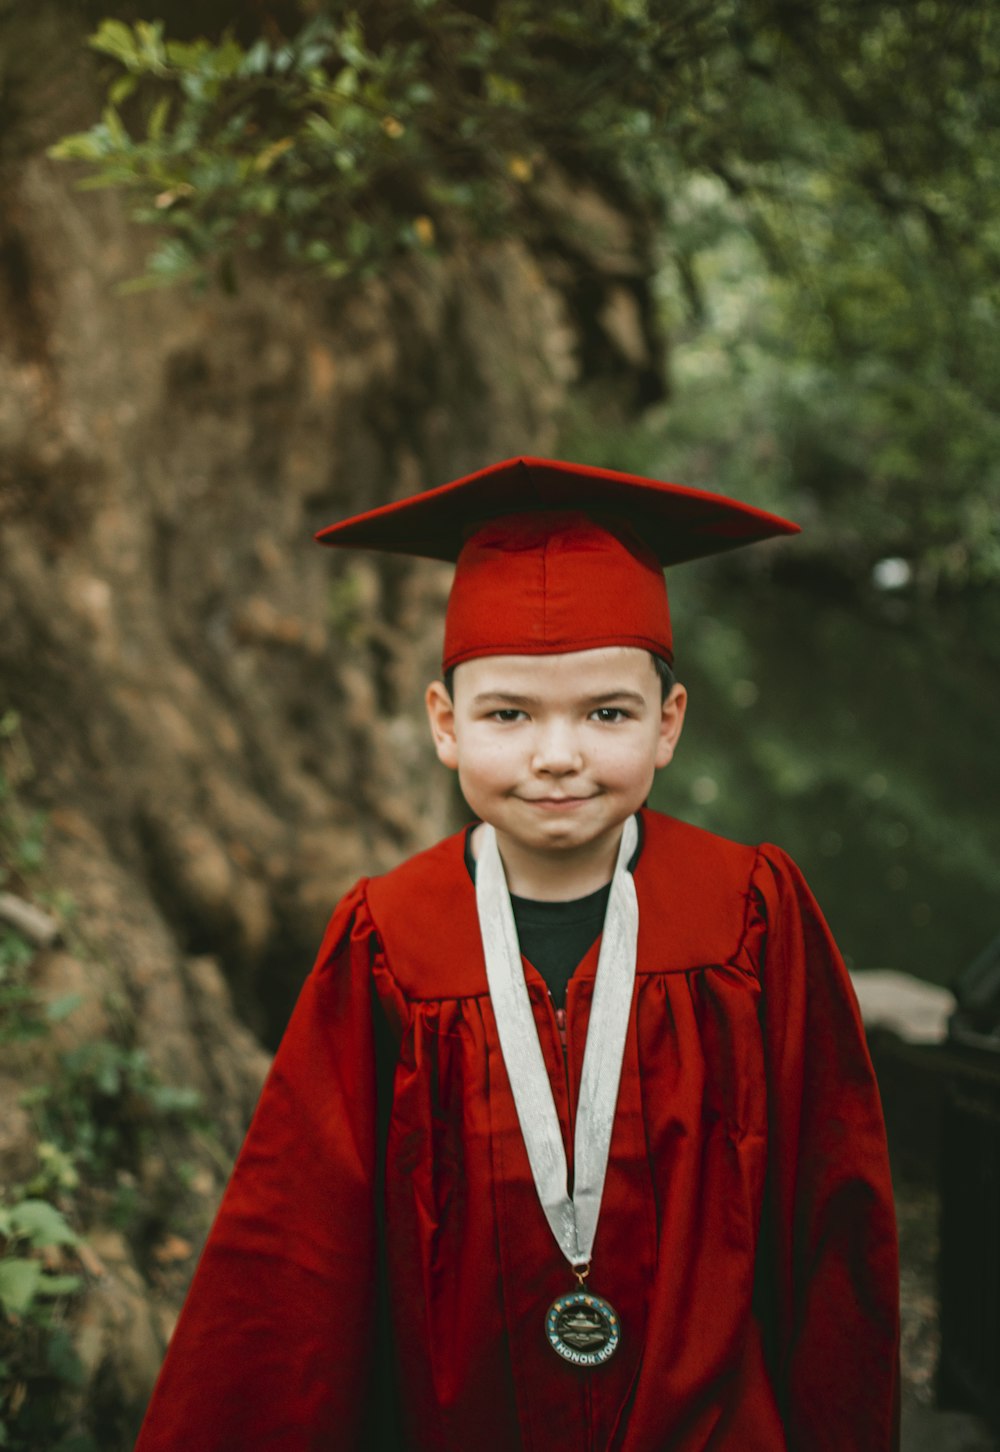 Foto Niño en túnica académica roja – Imagen Niño gratis en Unsplash